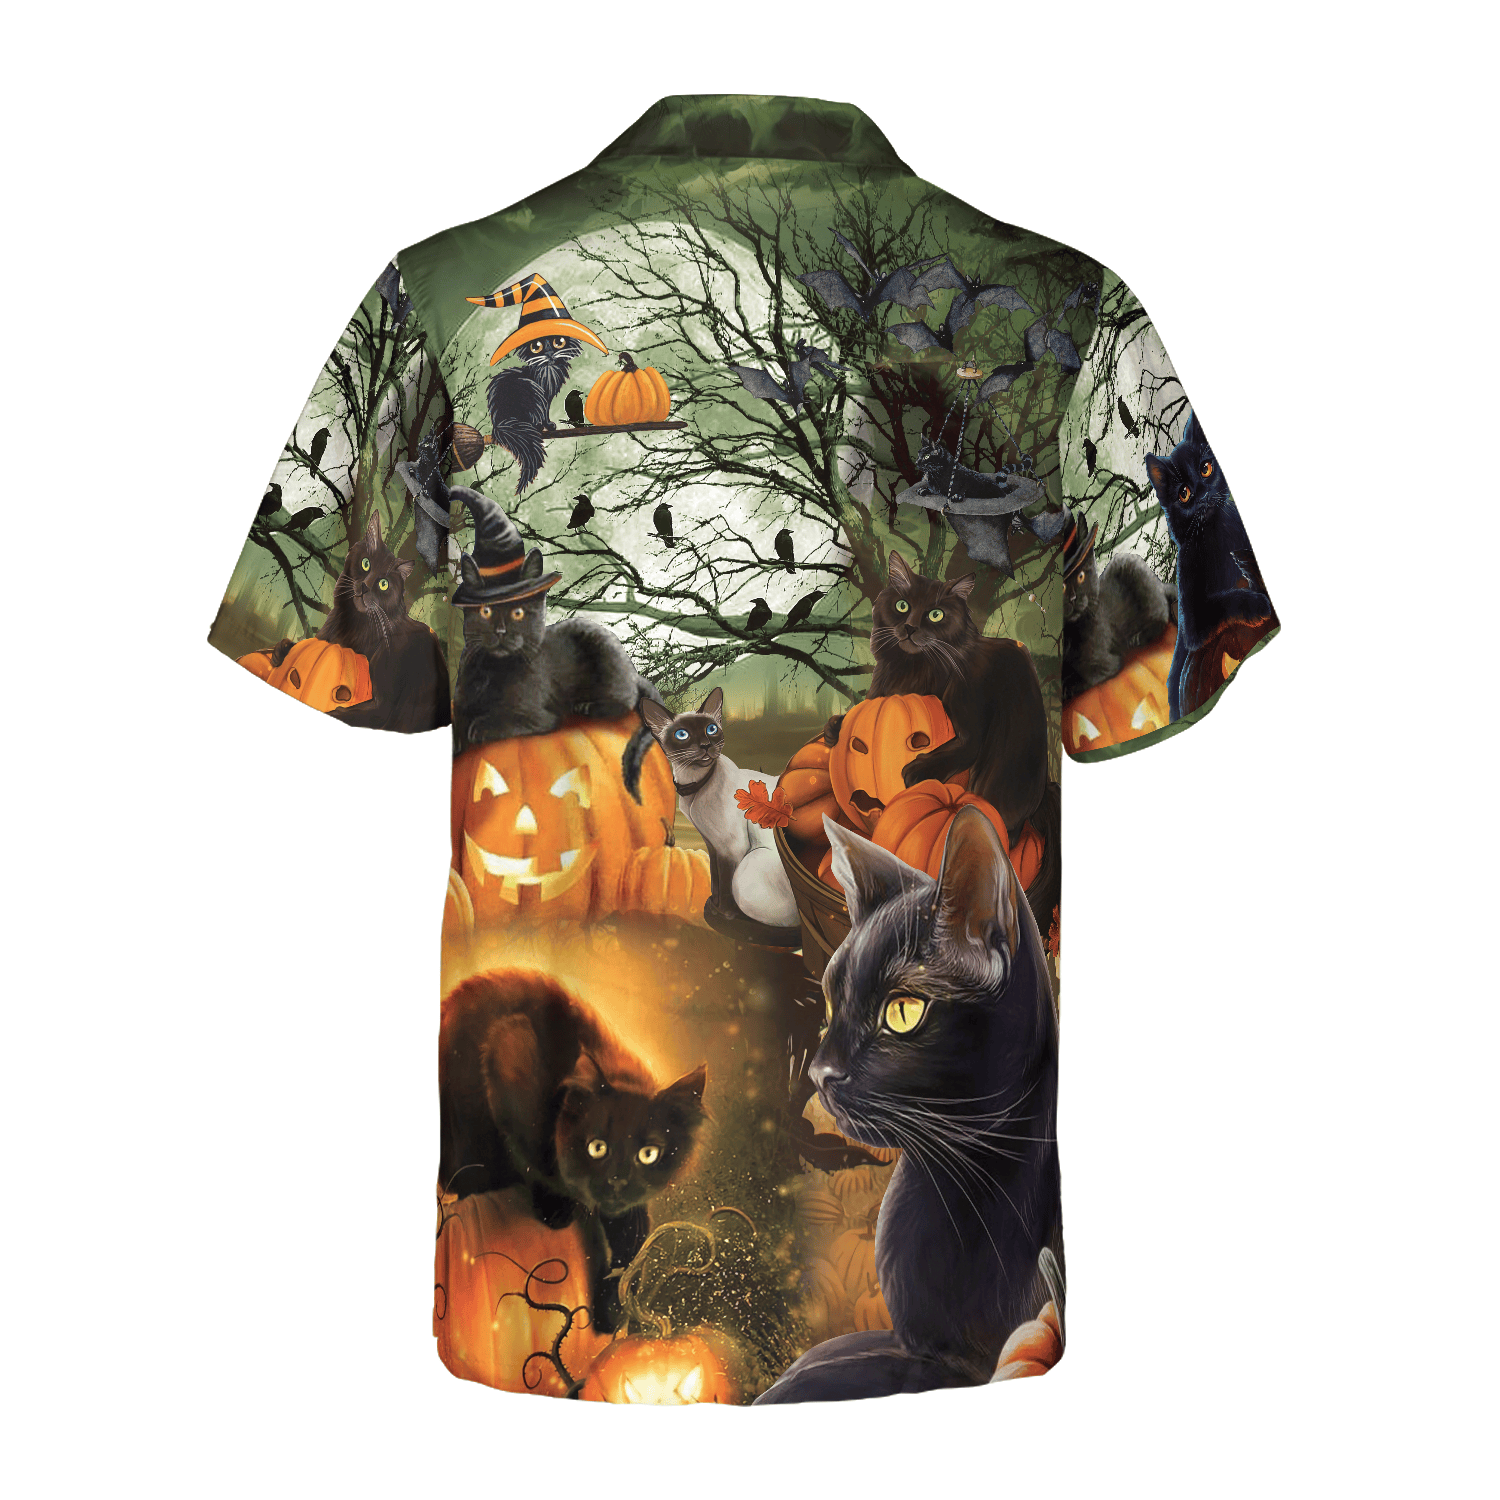 Black Cat & The Pumpkin Halloween Hawaiian Shirt, Halloween Shirt For Men And Women